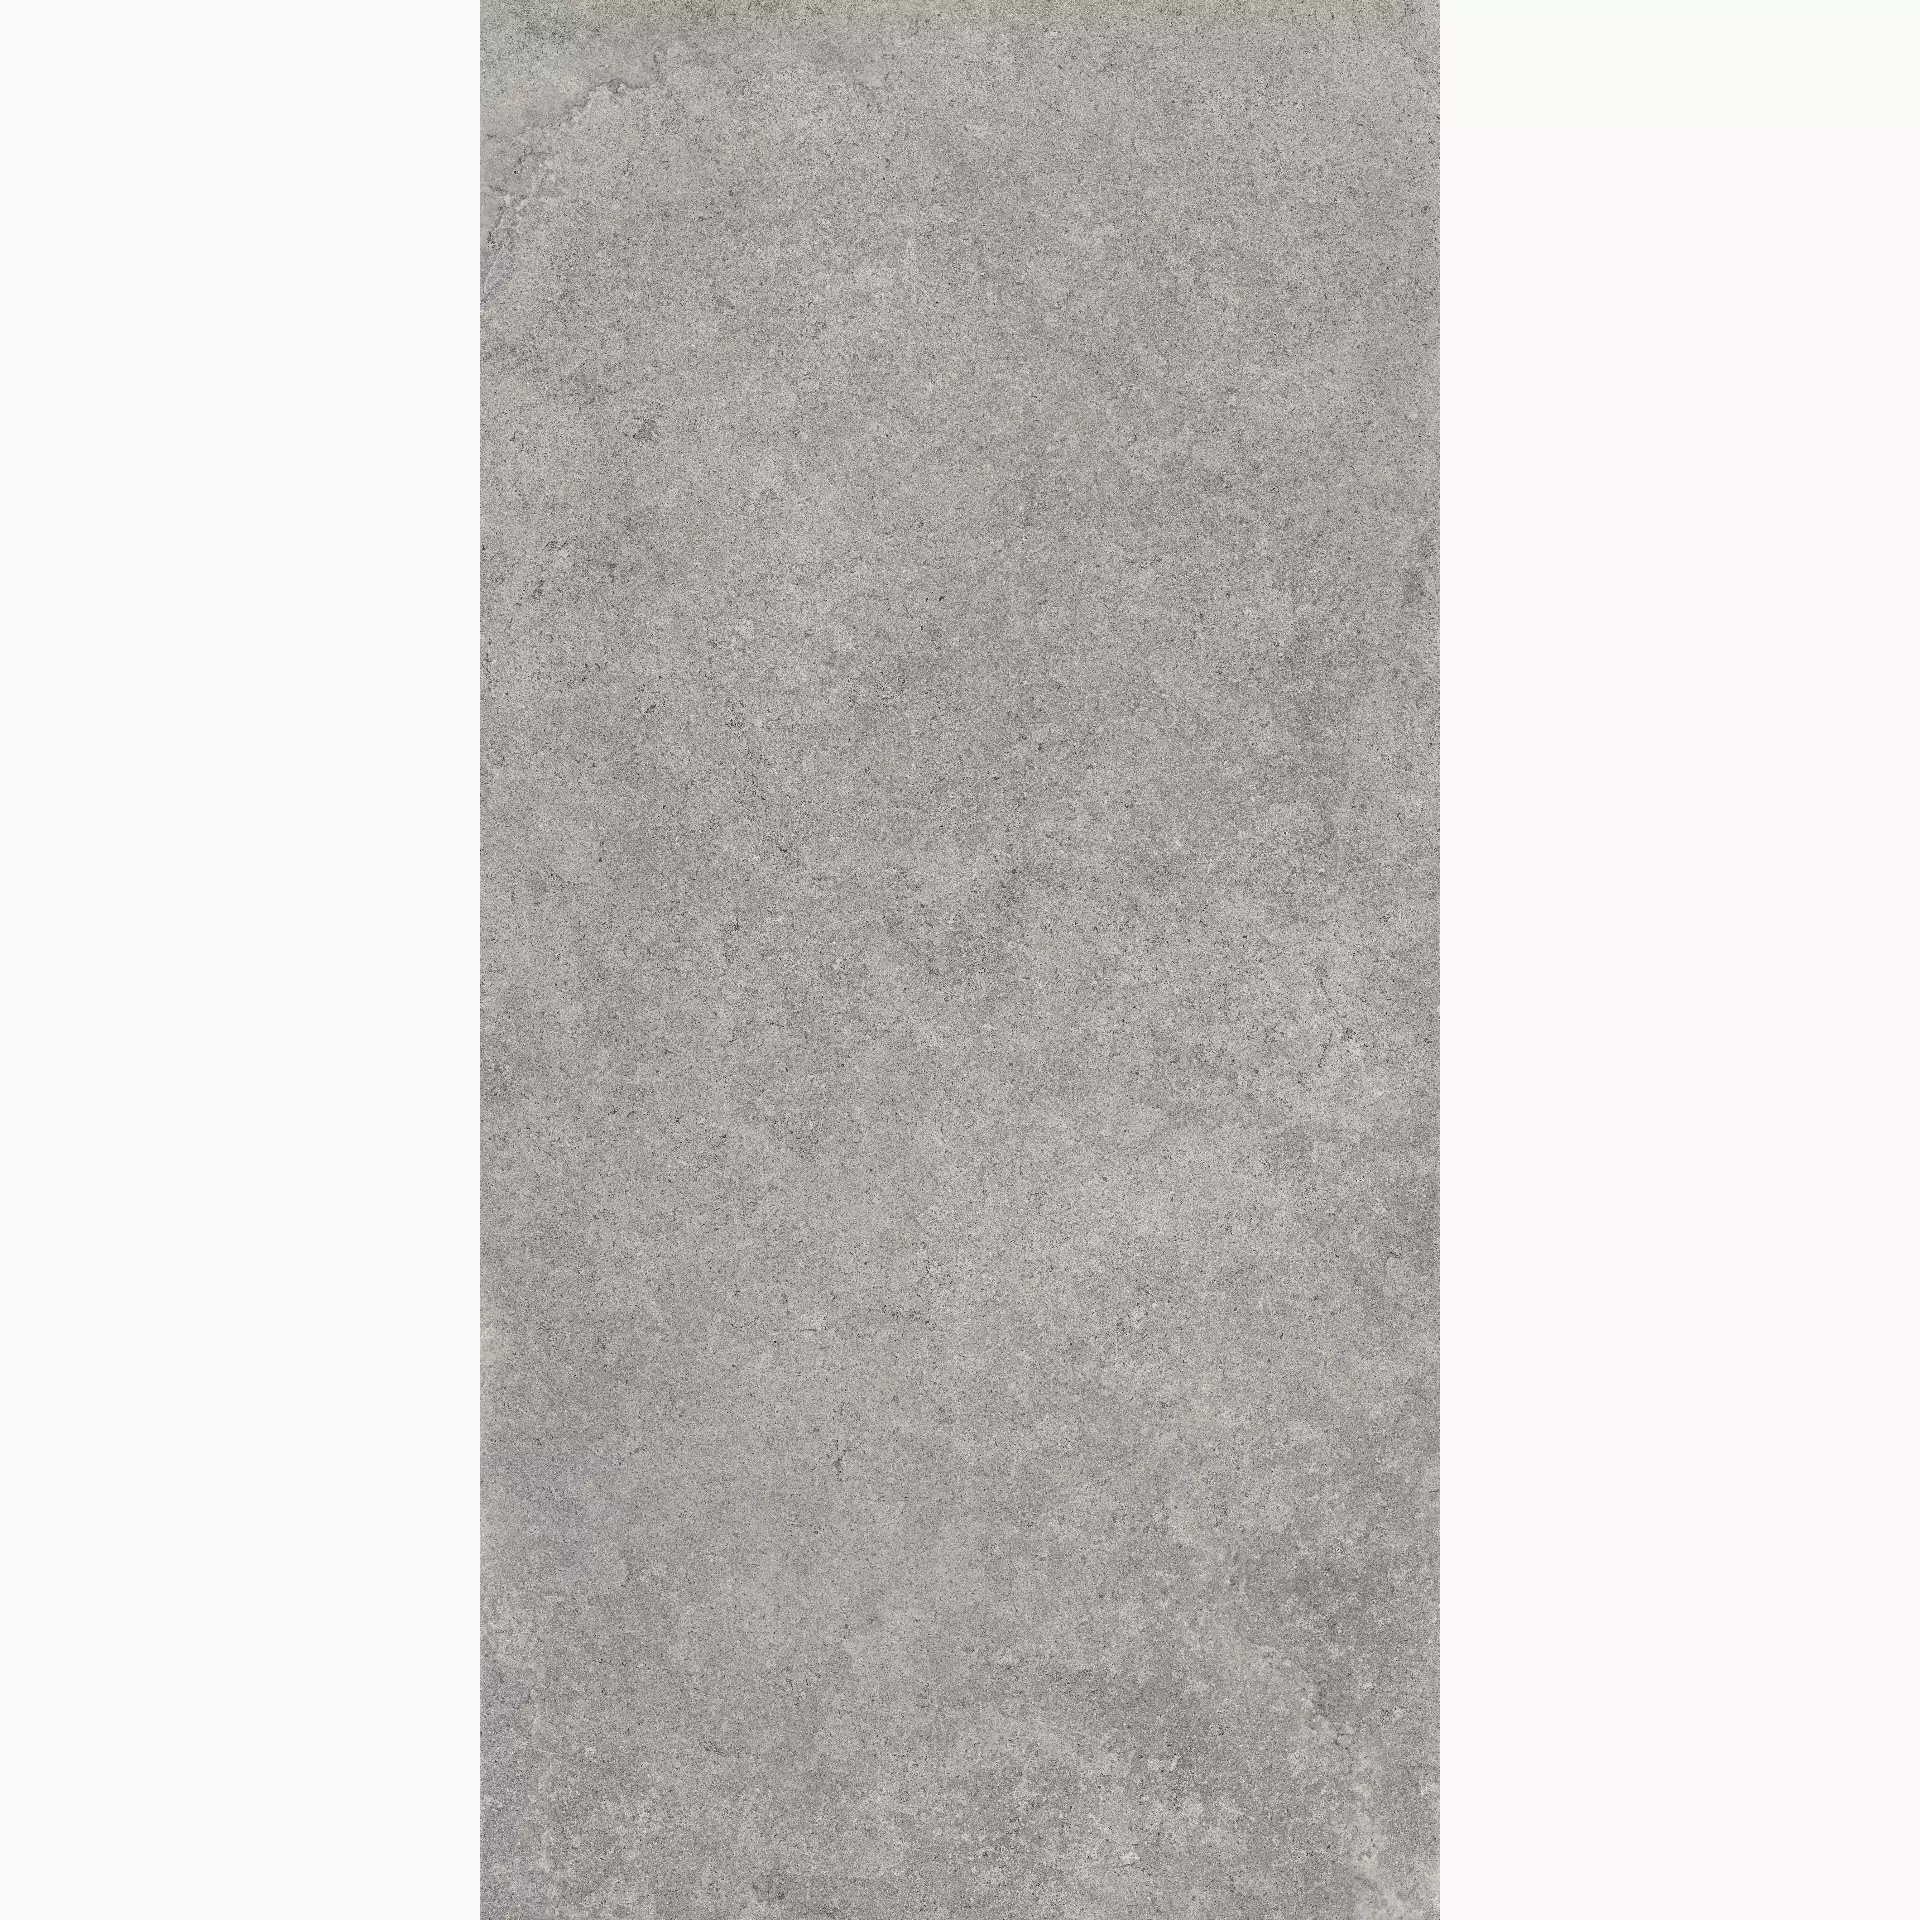 Cottodeste Pura Grey Honed Protect Grey EGXPRH0 antibakteriell geschliffen 60x120cm rektifiziert 14mm